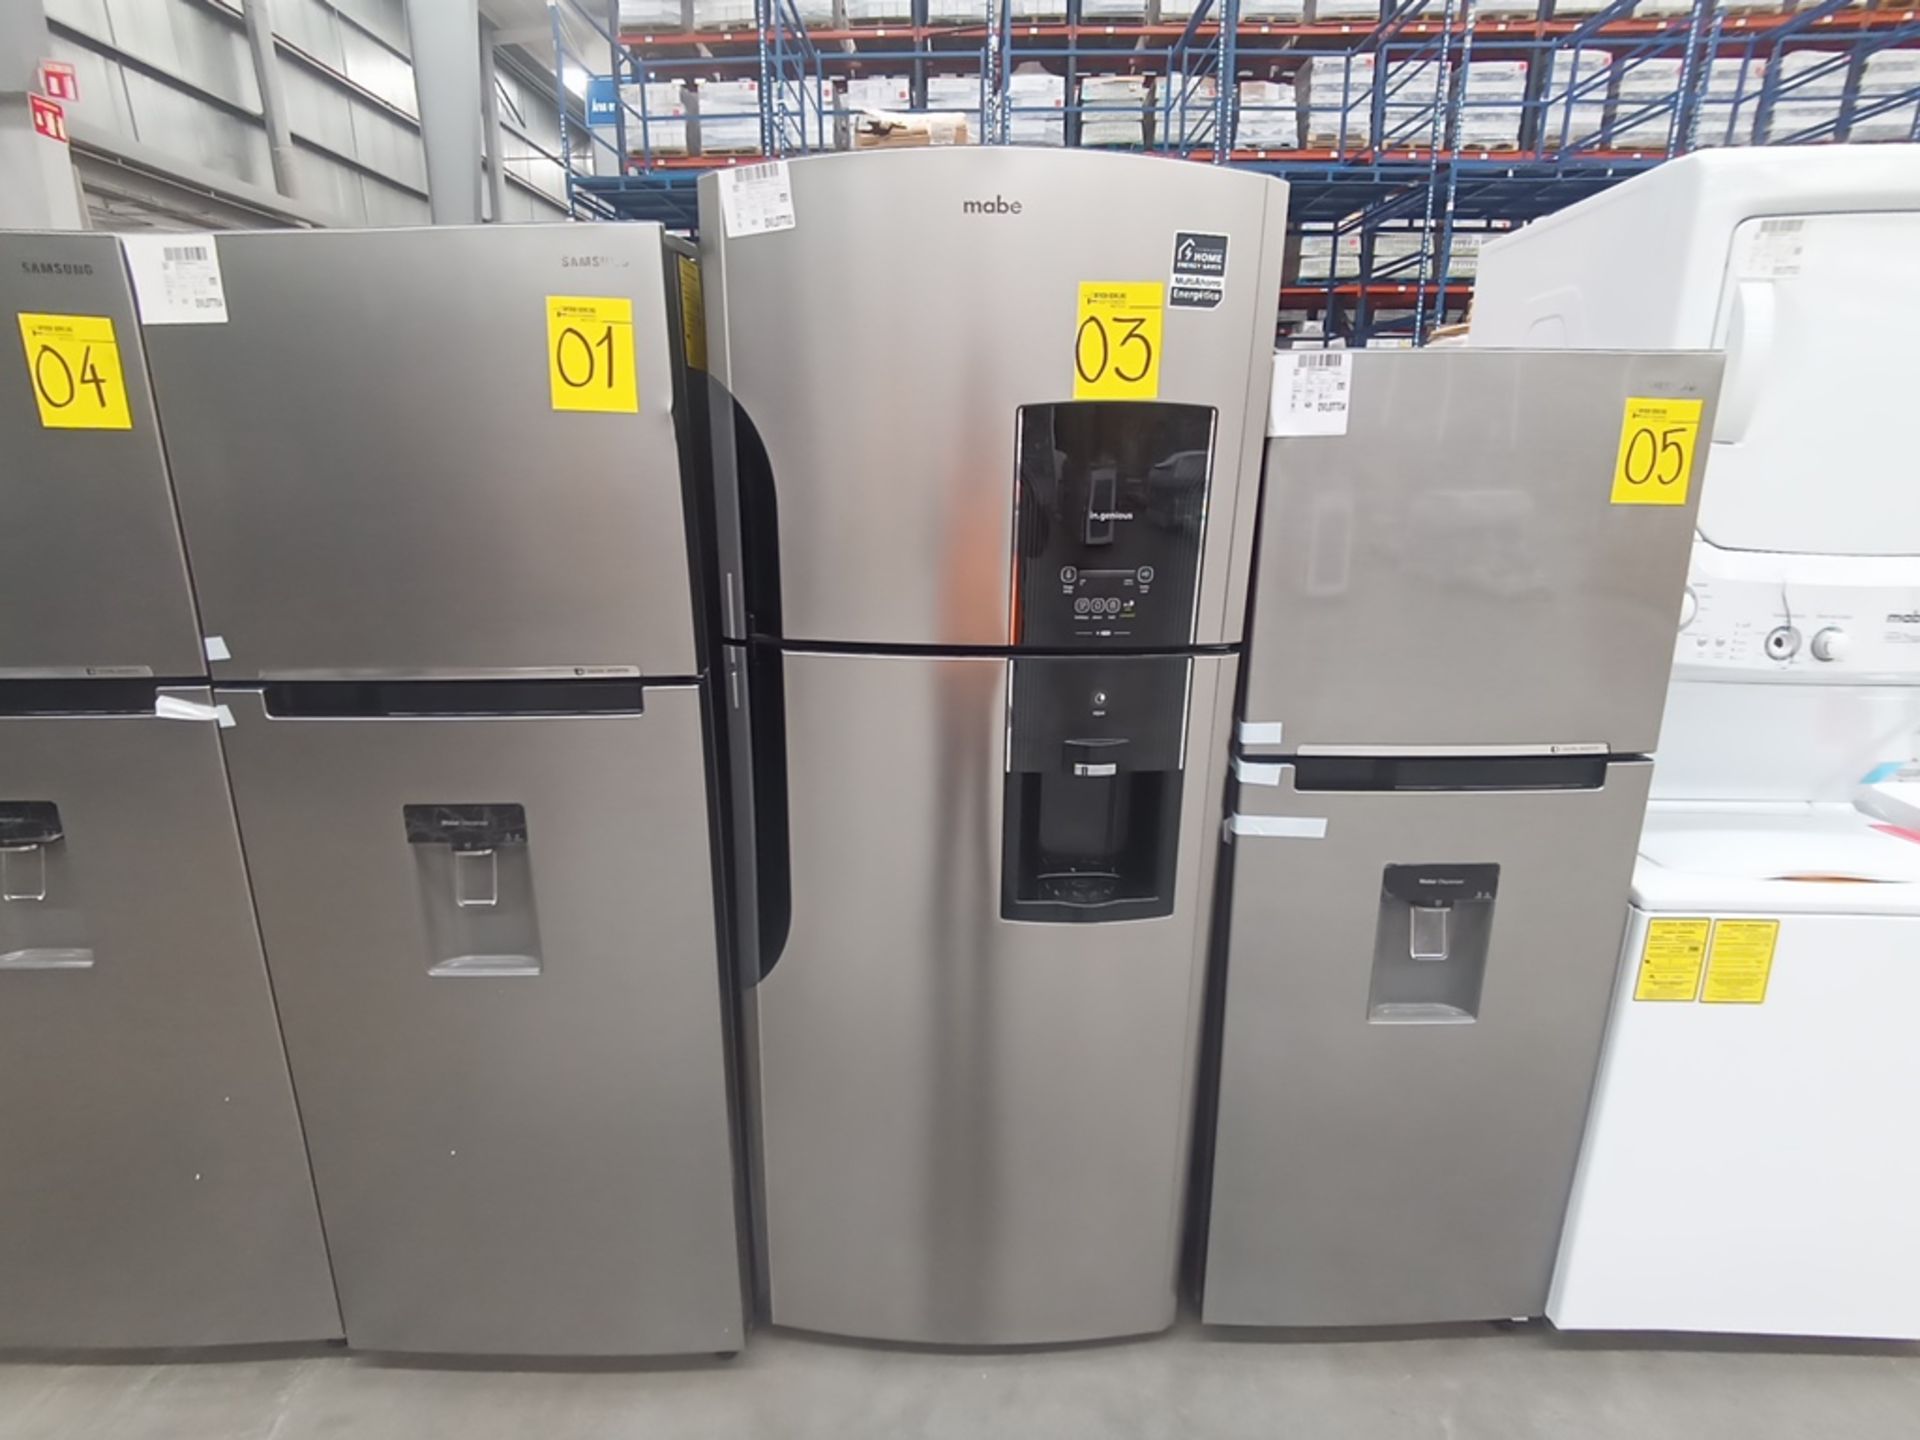 1 Refrigerador Marca Mabe, Modelo RMS6510IBMRXA, Serie 2201B408657, Color Gris, Golpeado, Favor de - Image 3 of 10